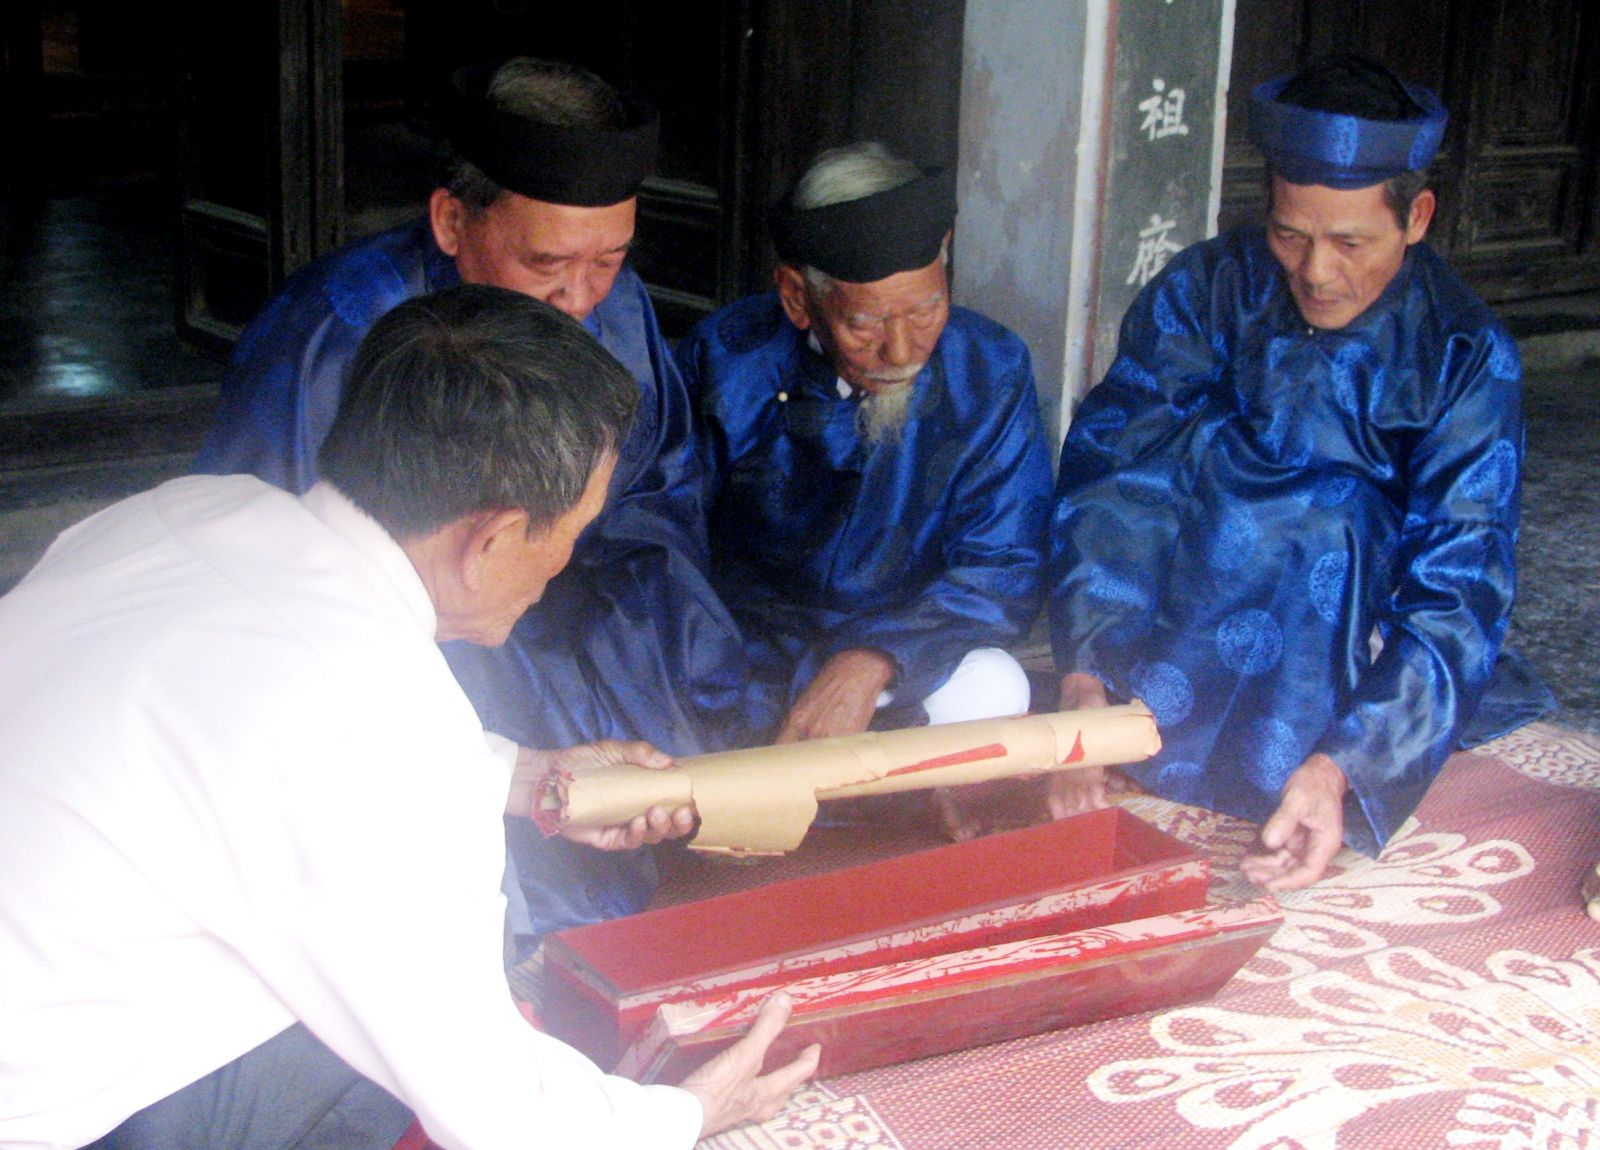  Khai mở hòm bộ sắc phong Hán Nôm tại một nhà thờ họ ở TP. Huế. Ảnh tư liệu 